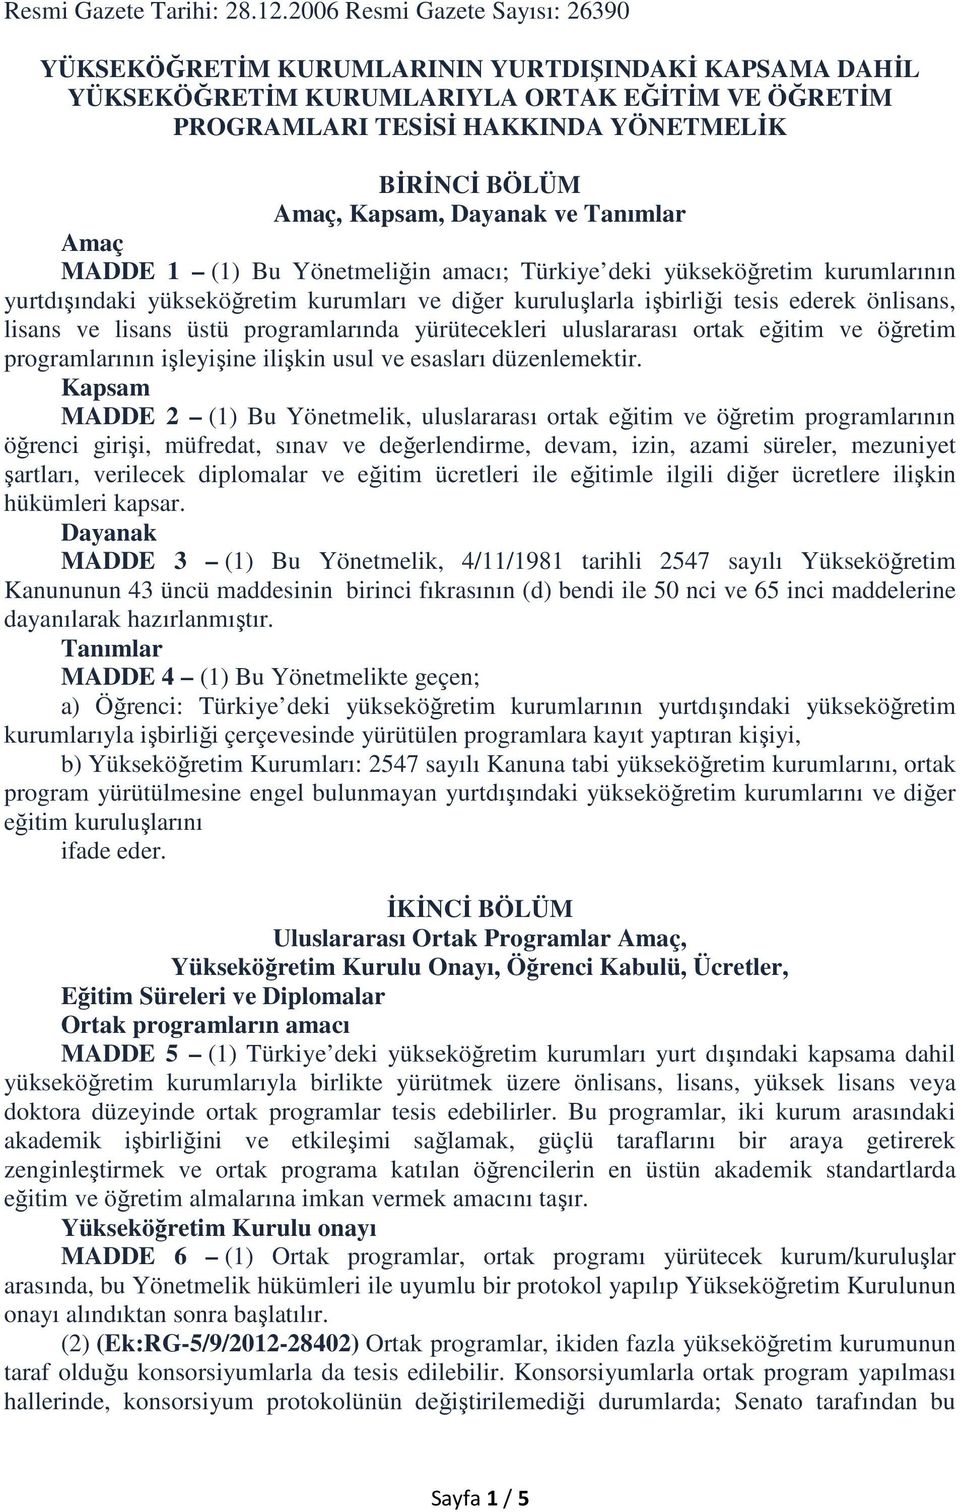 Kapsam, Dayanak ve Tanımlar Amaç MADDE 1 (1) Bu Yönetmeliğin amacı; Türkiye deki yükseköğretim kurumlarının yurtdışındaki yükseköğretim kurumları ve diğer kuruluşlarla işbirliği tesis ederek